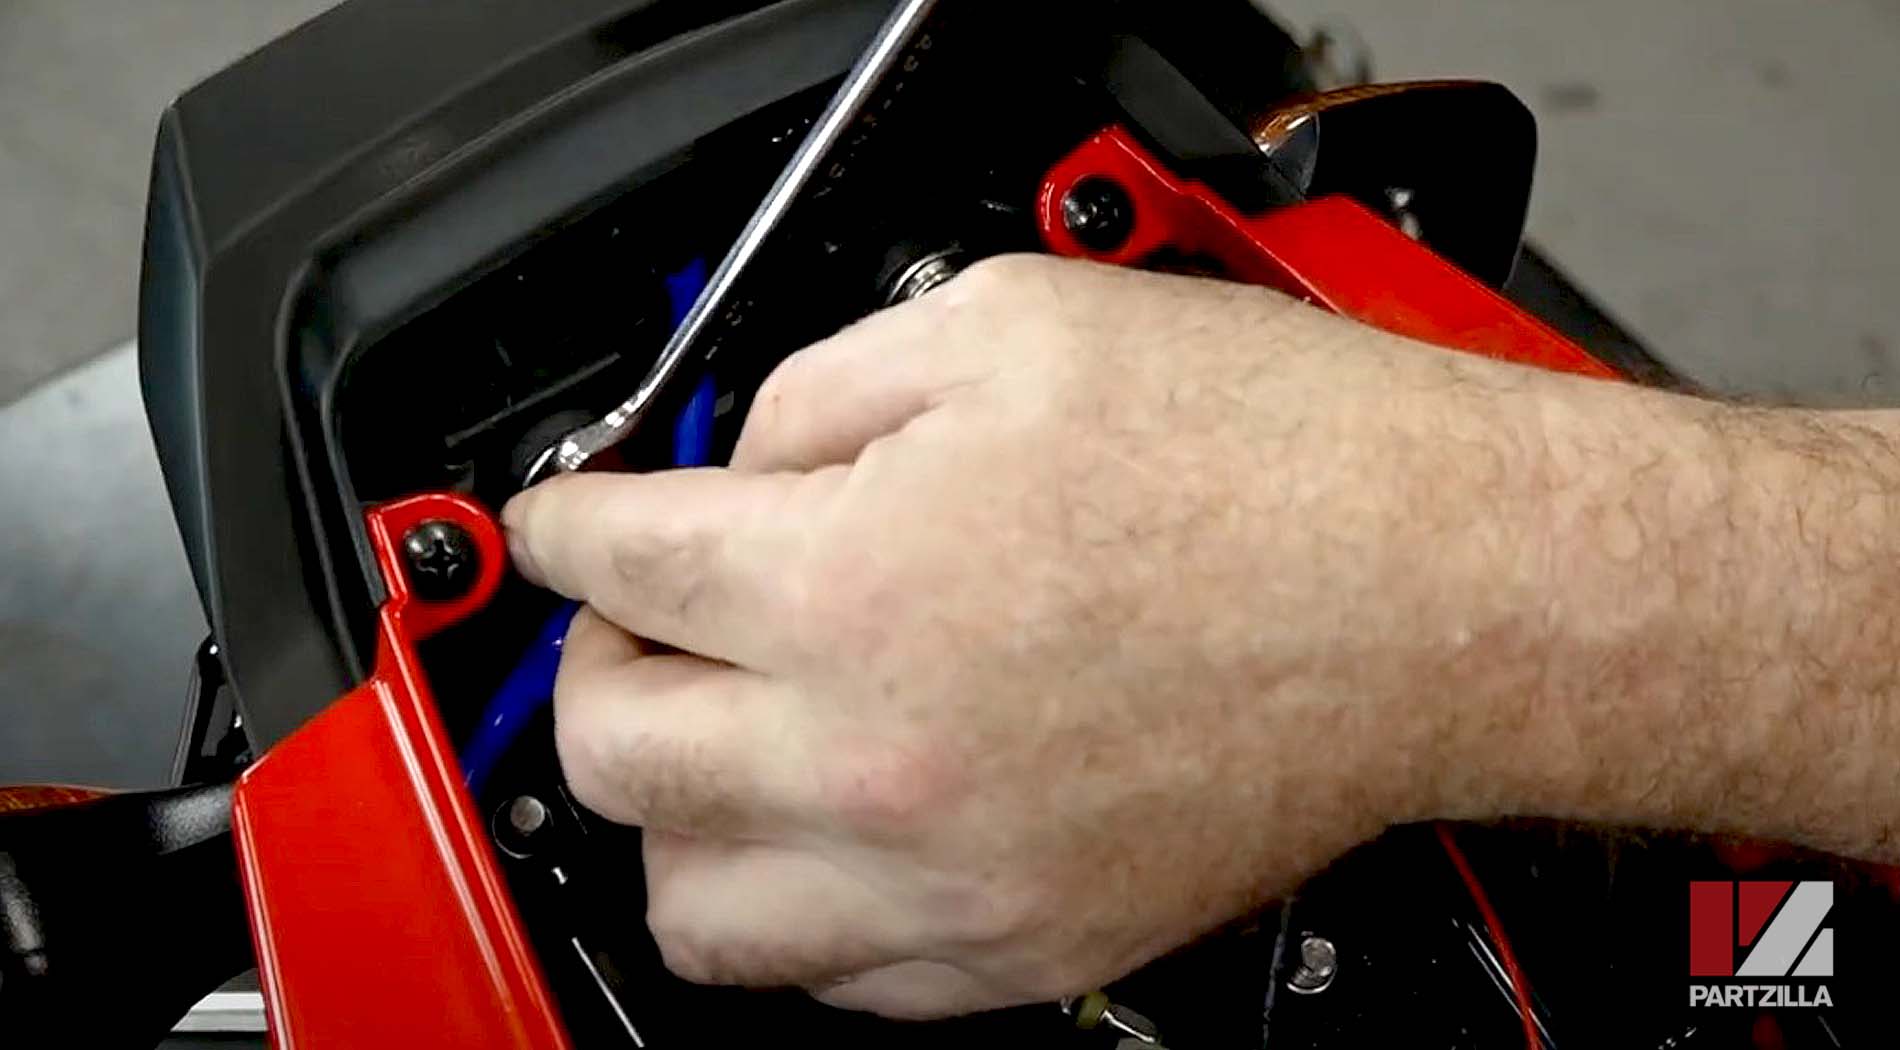 2018 Honda Grom ABS 125 aftermarket rear fender eliminator kit installation